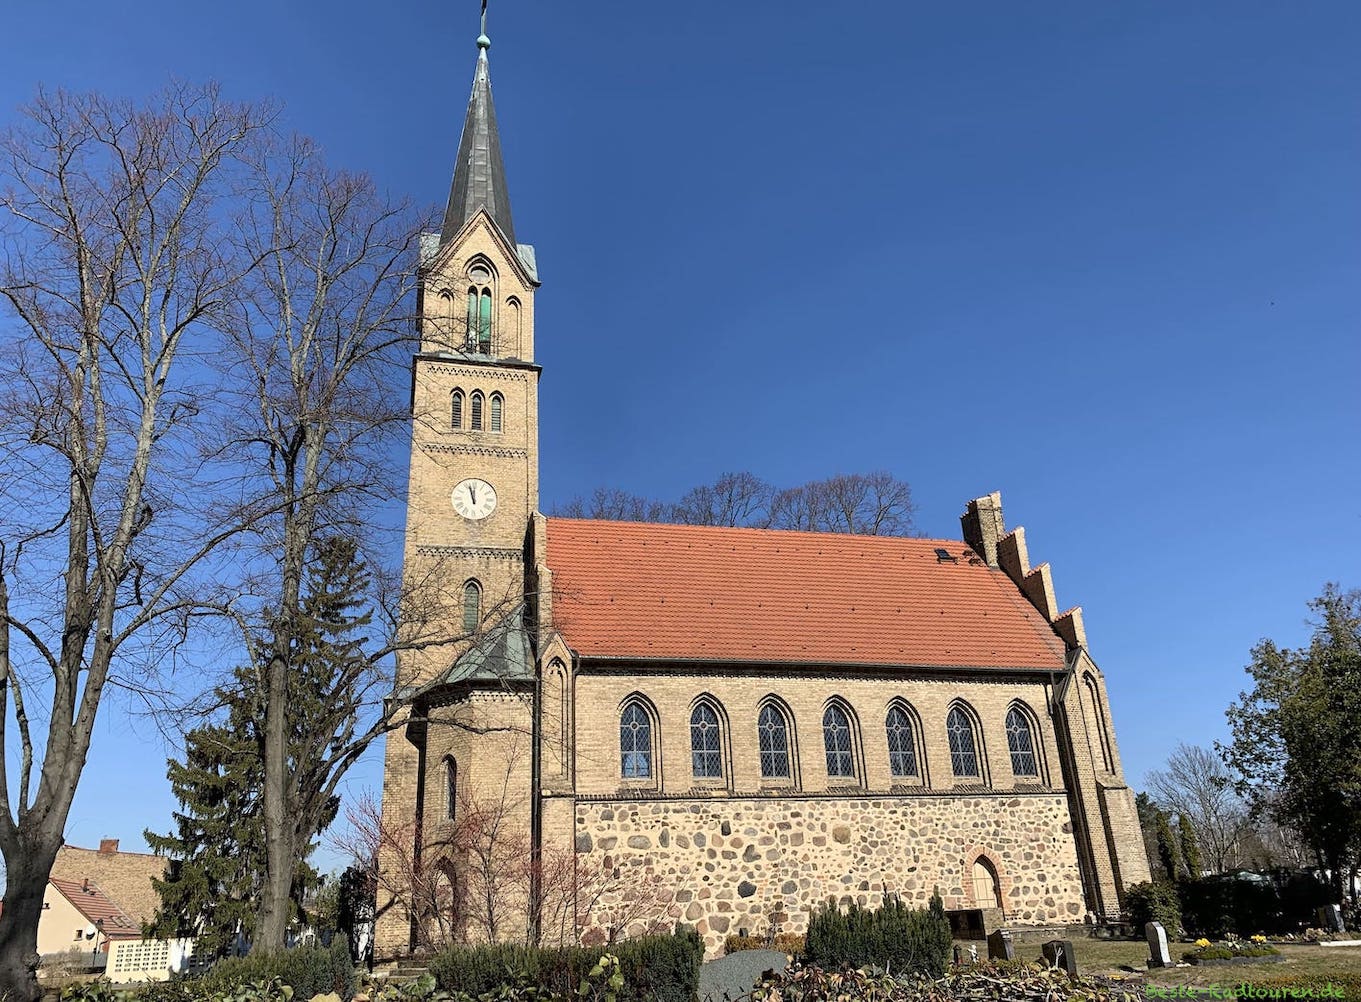 Dorfkirche Glindow bei Werder, Foto von der Seite und von Süden her